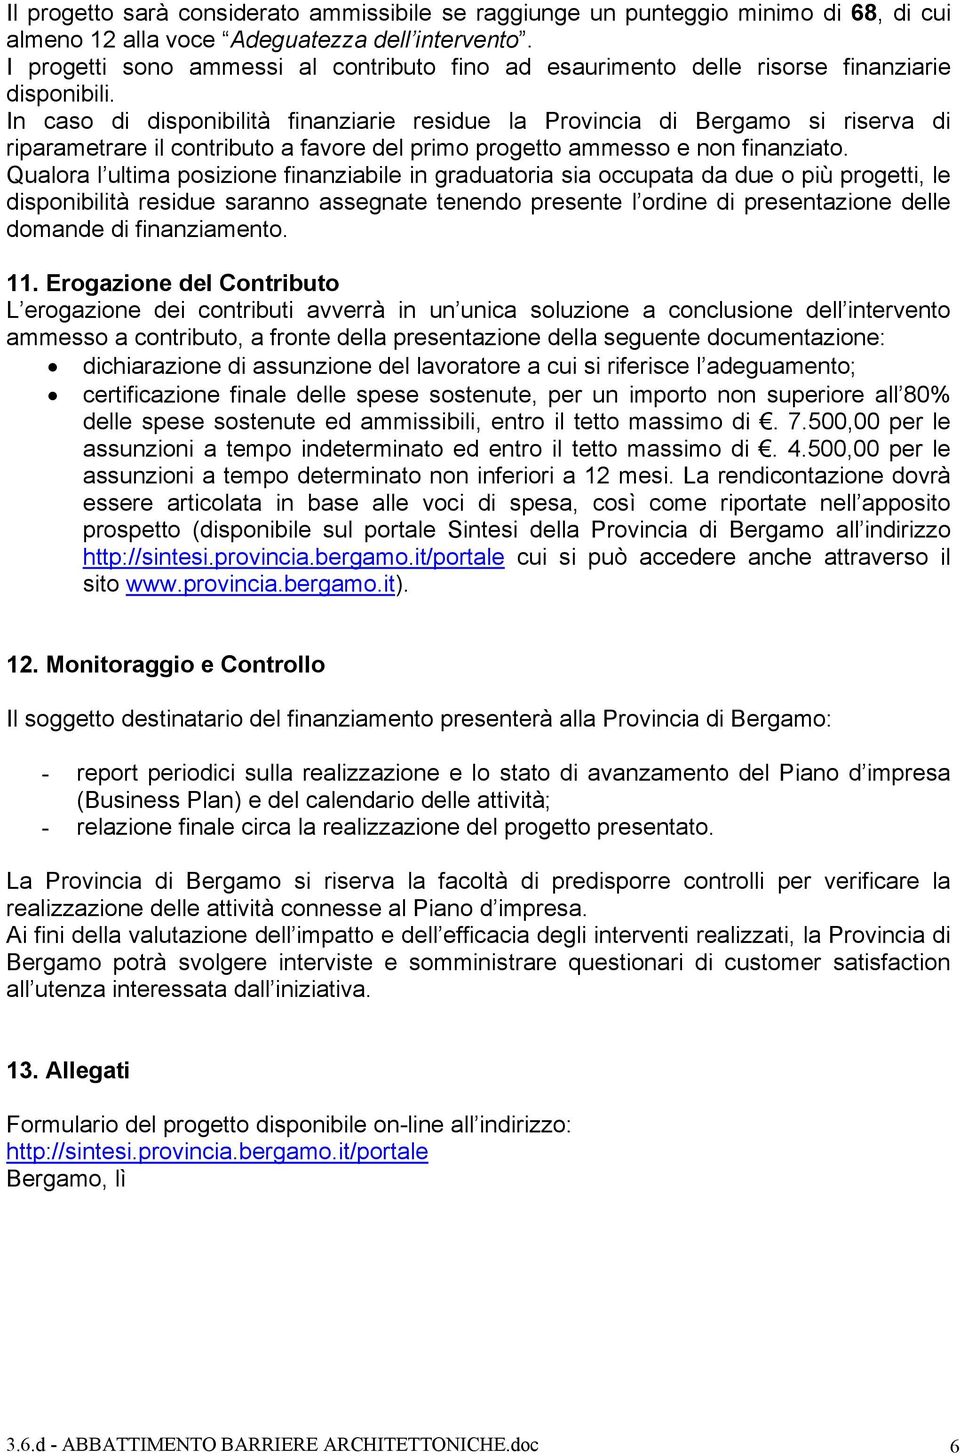 In caso di disponibilità finanziarie residue la Provincia di Bergamo si riserva di riparametrare il contributo a favore del primo progetto ammesso e non finanziato.